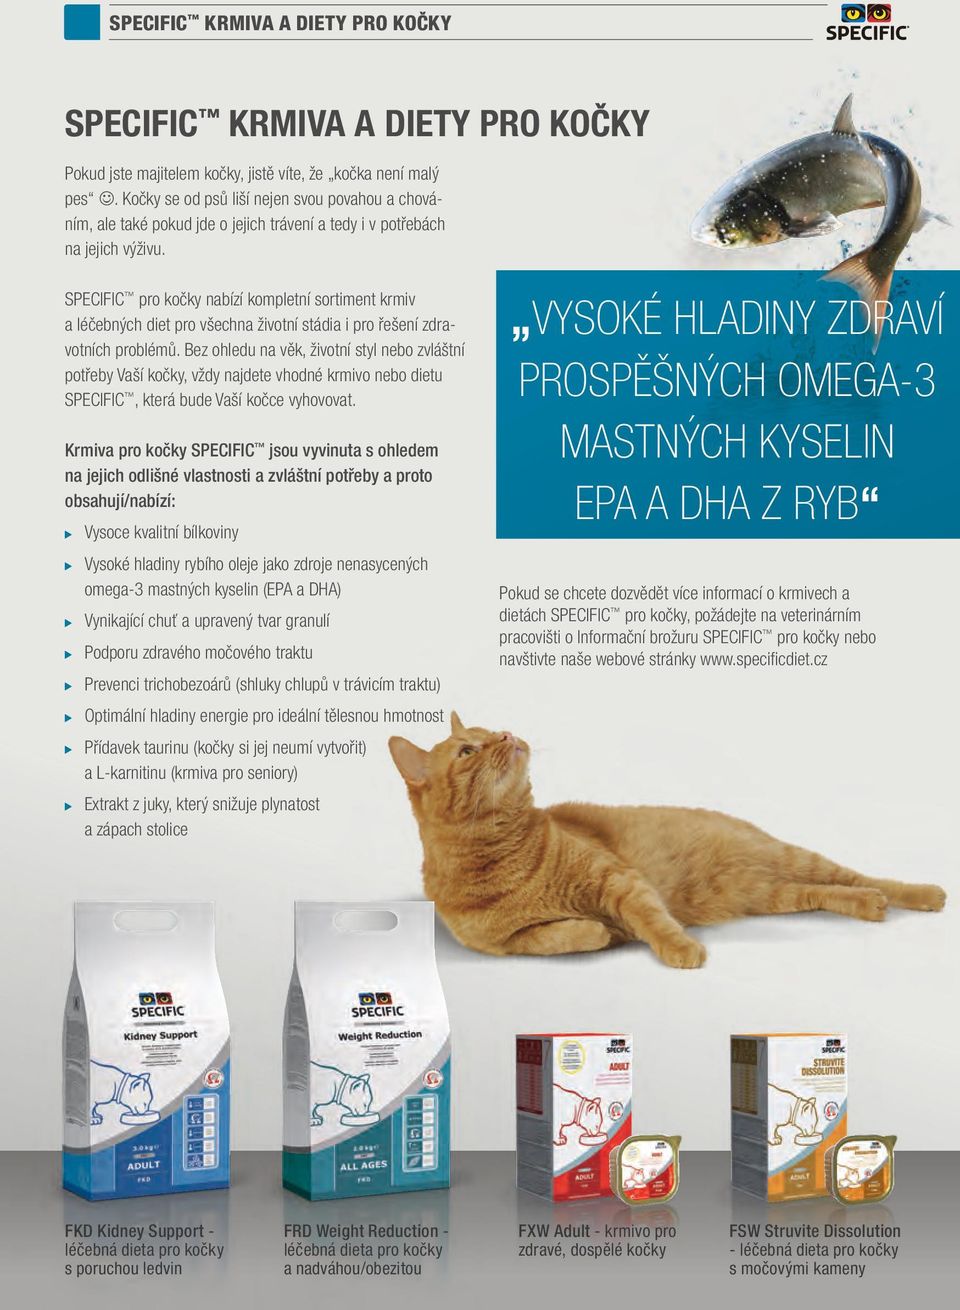 SPECIFIC pro kočky nabízí kompletní sortiment krmiv a léčebných diet pro všechna životní stádia i pro řešení zdravotních problémů.